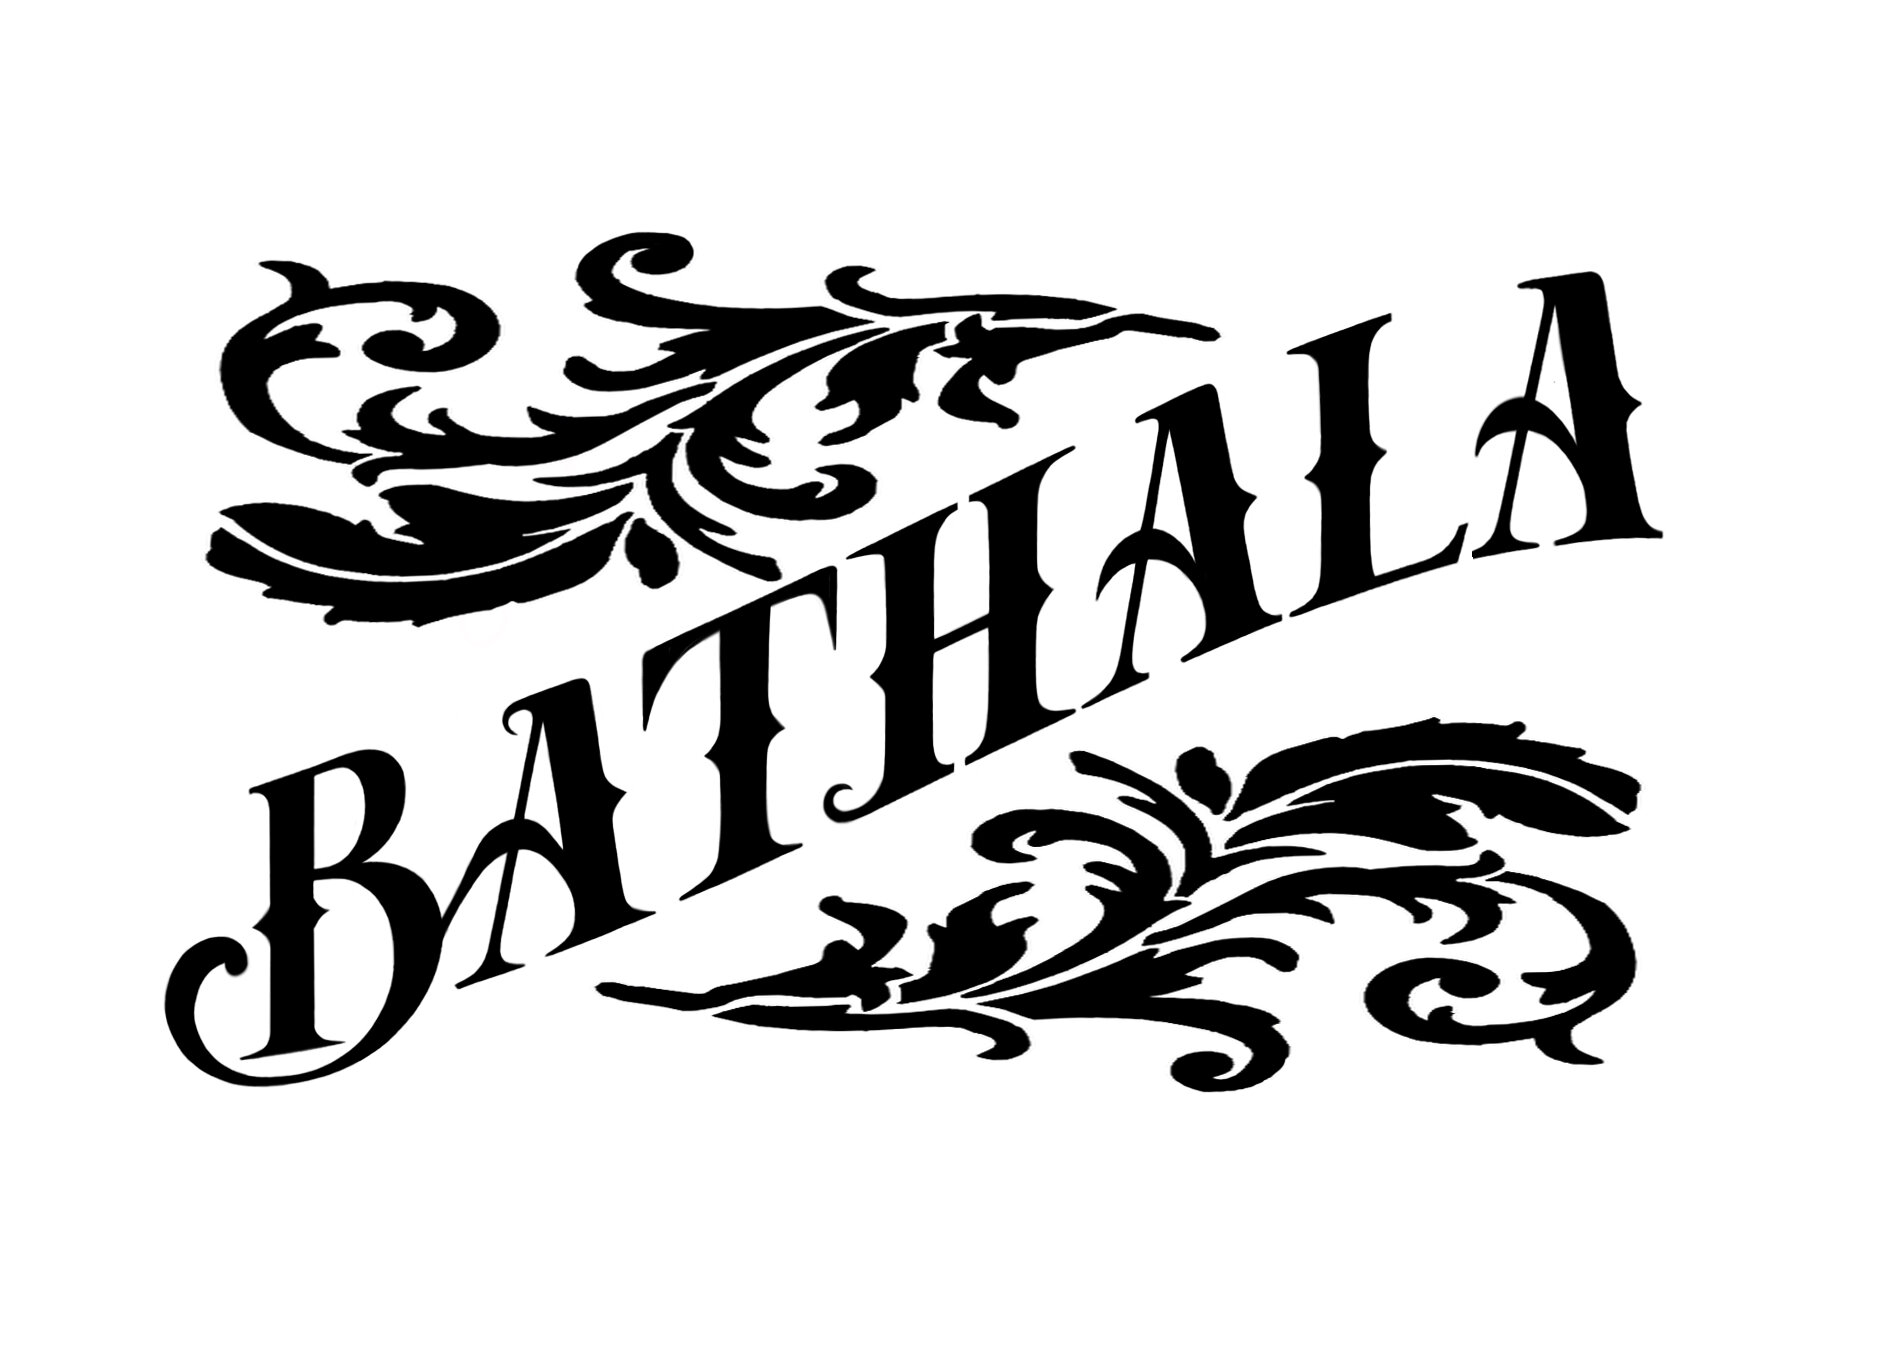 Bathala Beauty logo